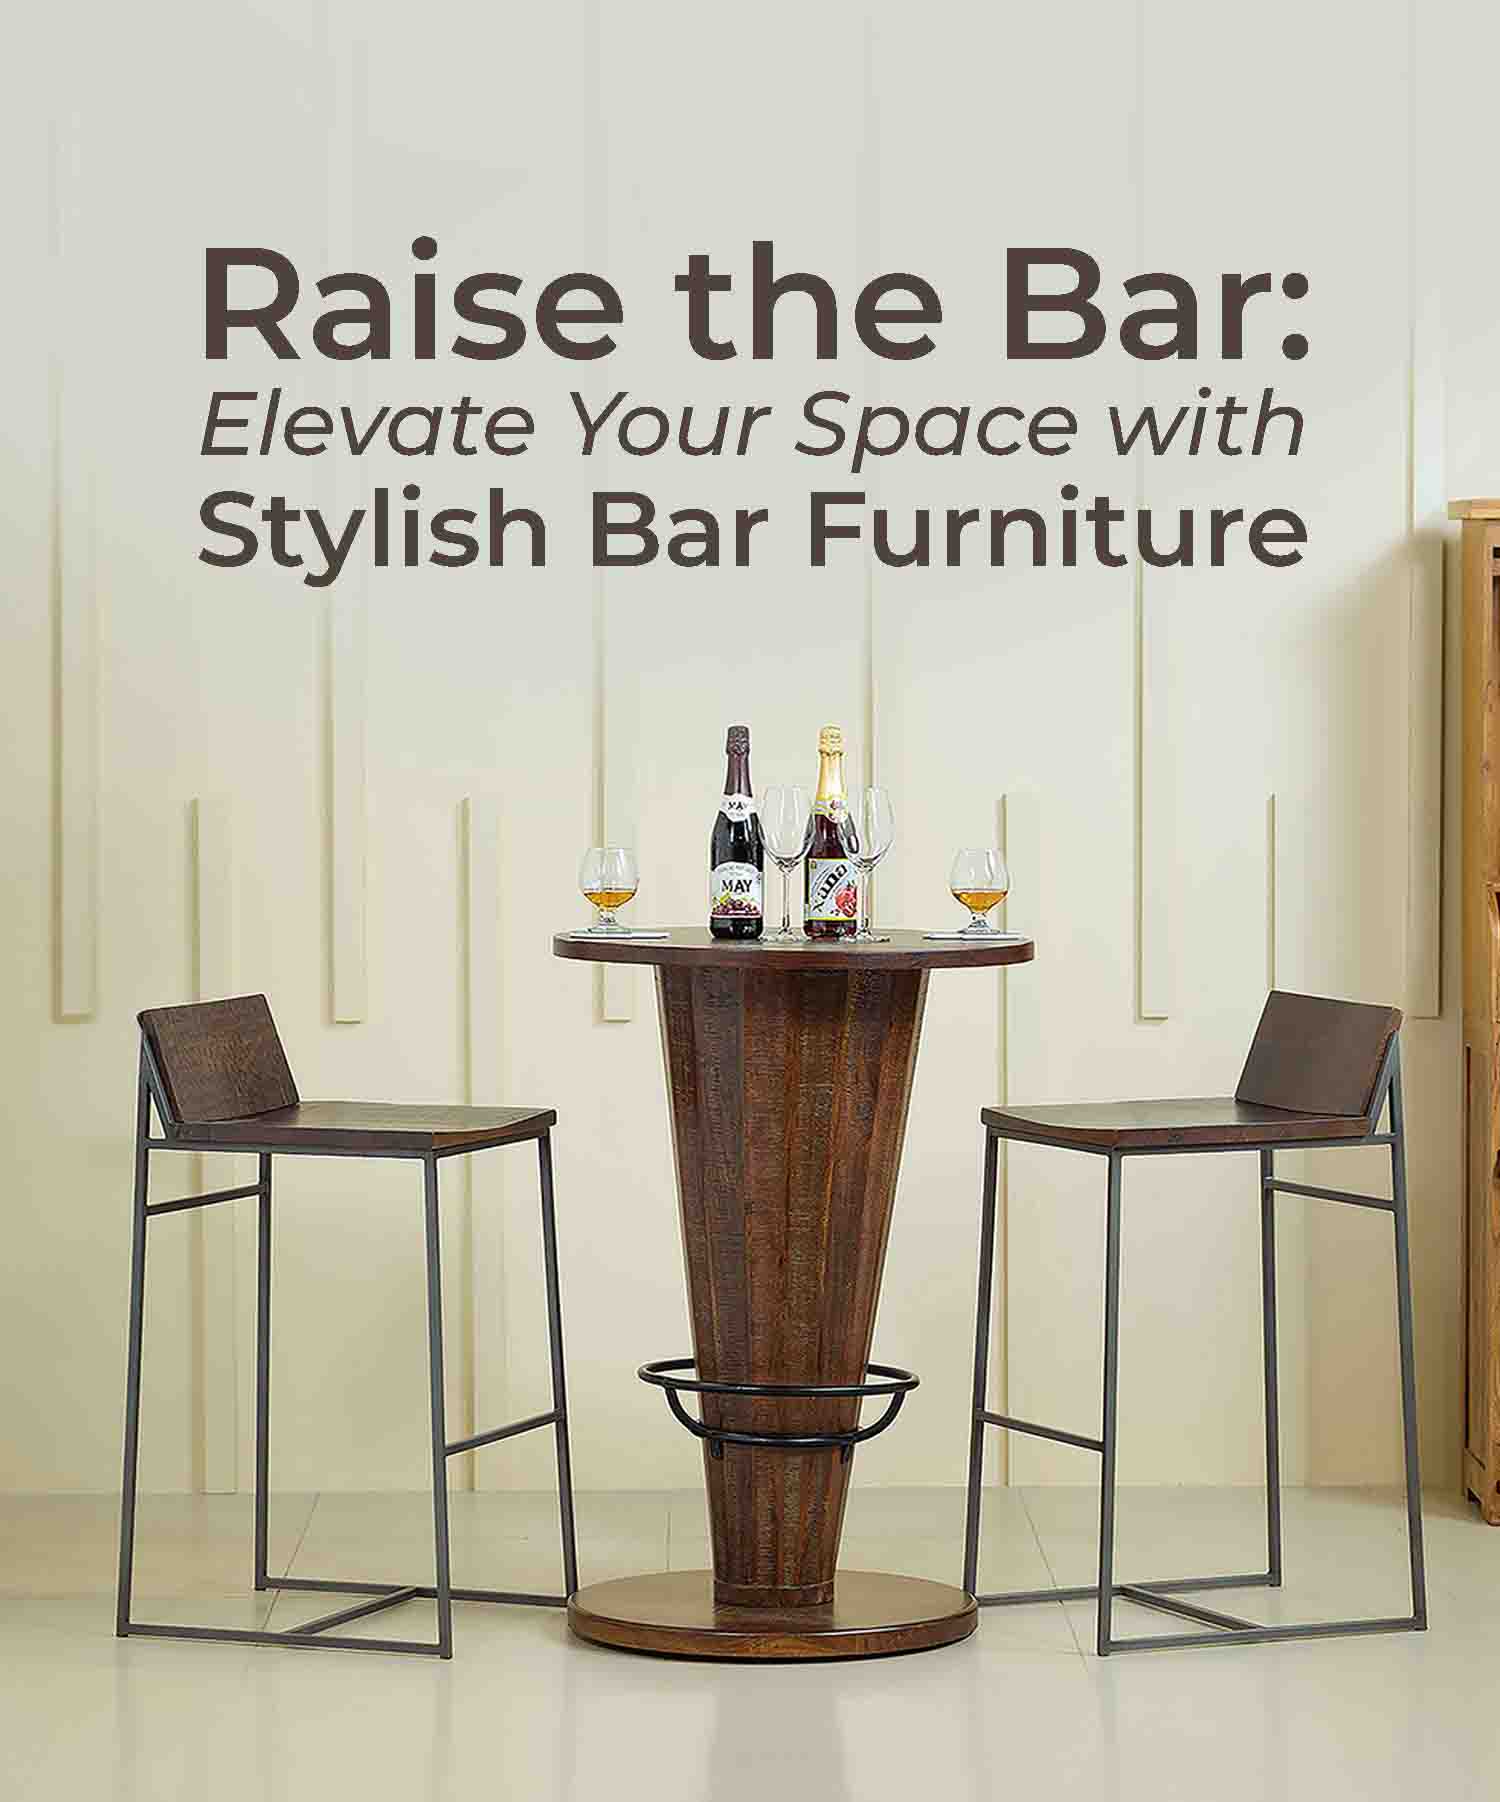 bar furniture, bar stools, bar cabinets